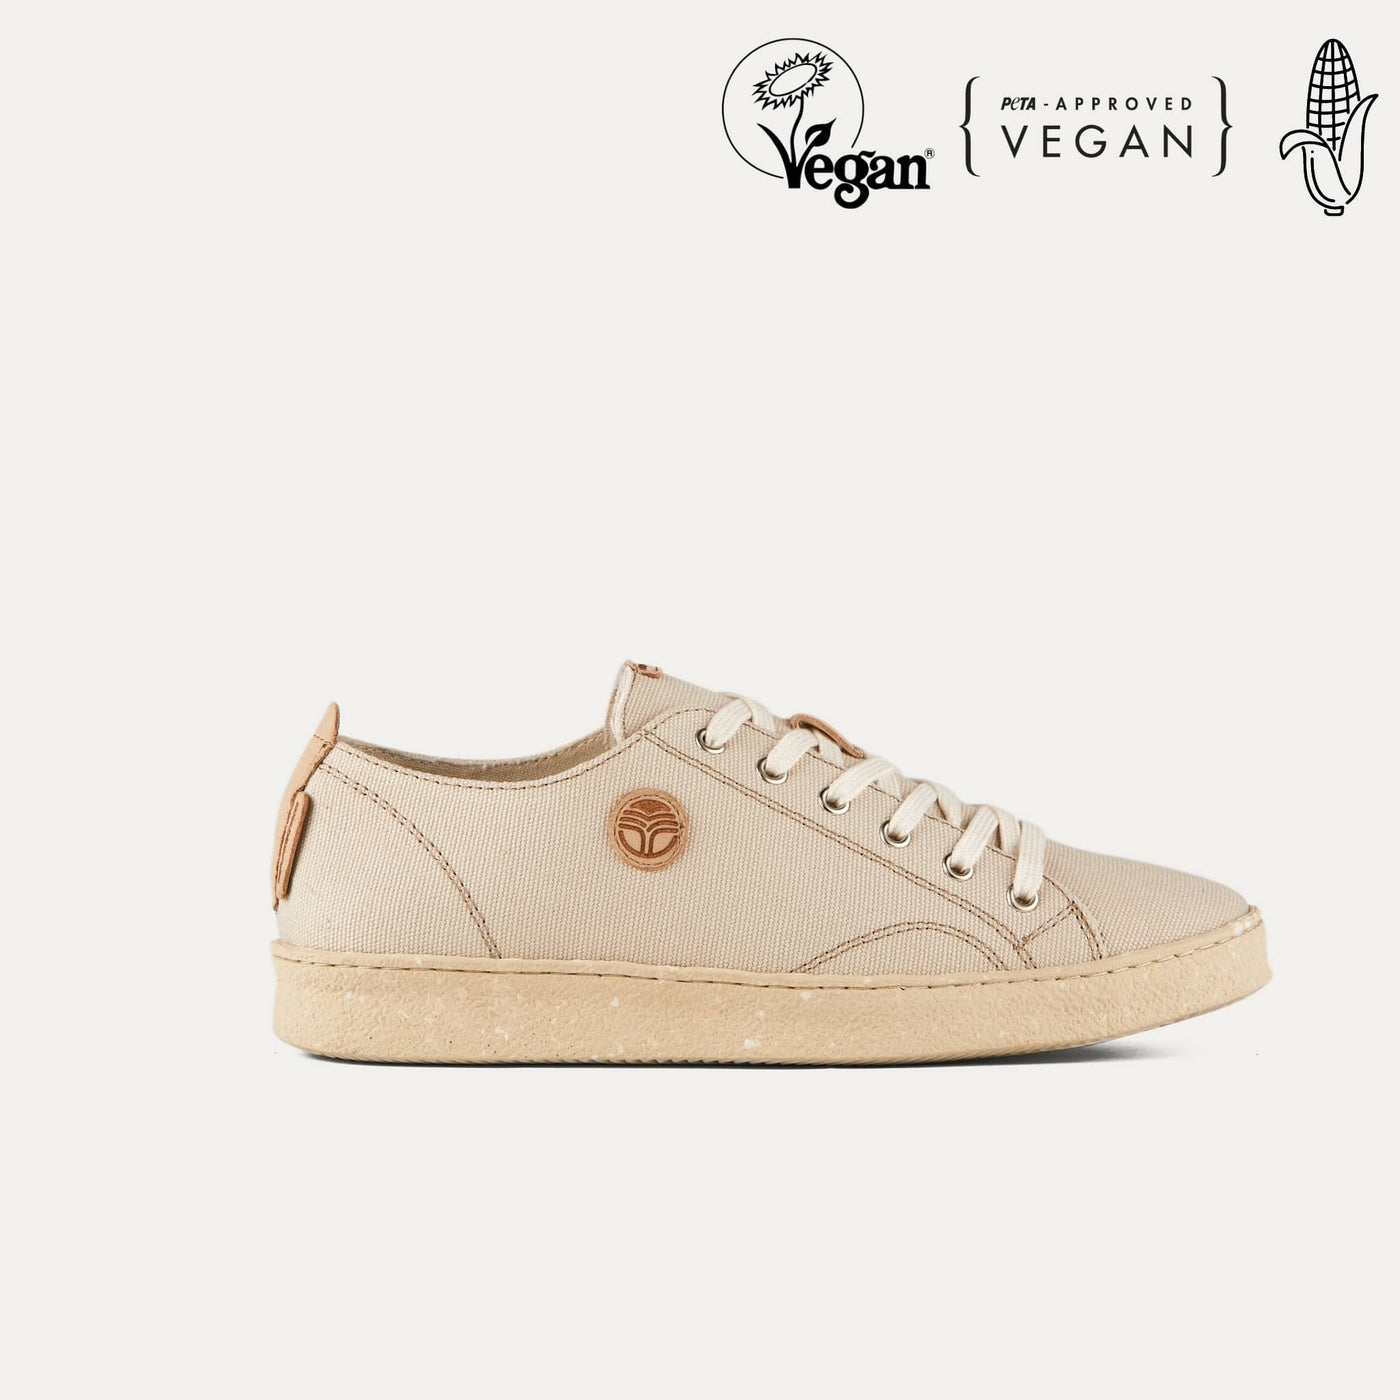 Life Sahara Vegan Shoes